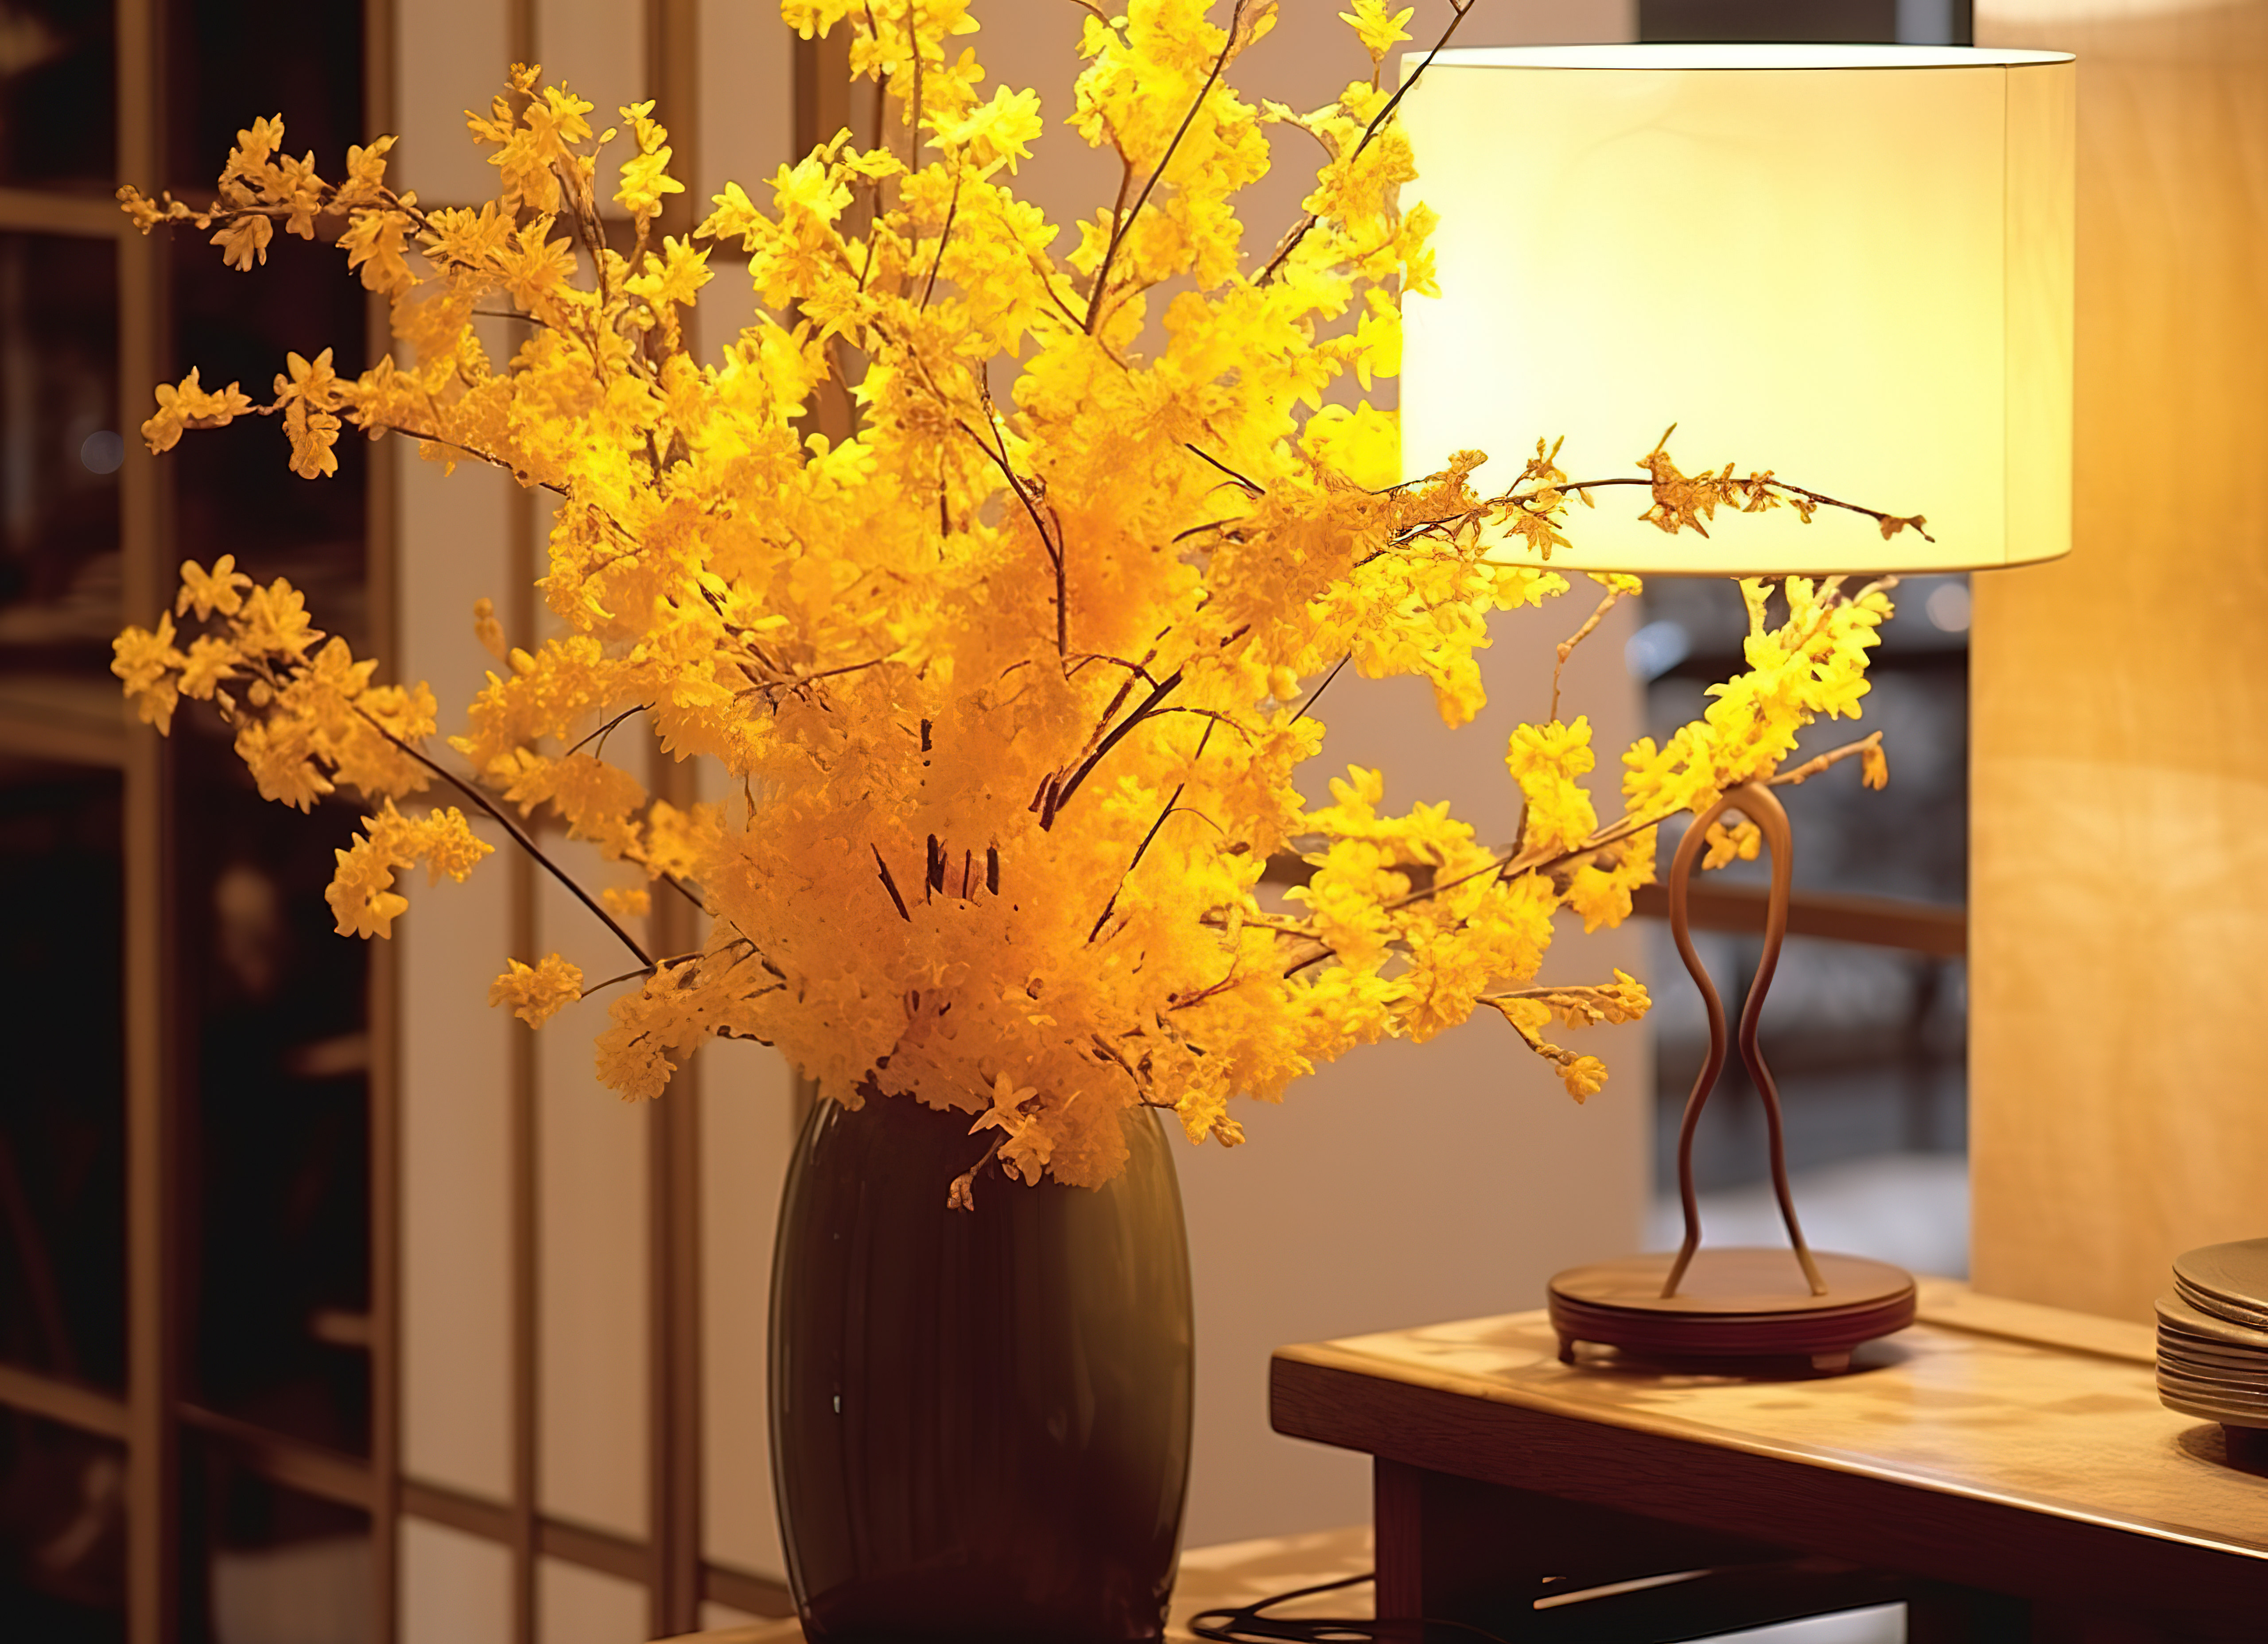 桌子上花瓶里的黄色花朵图片